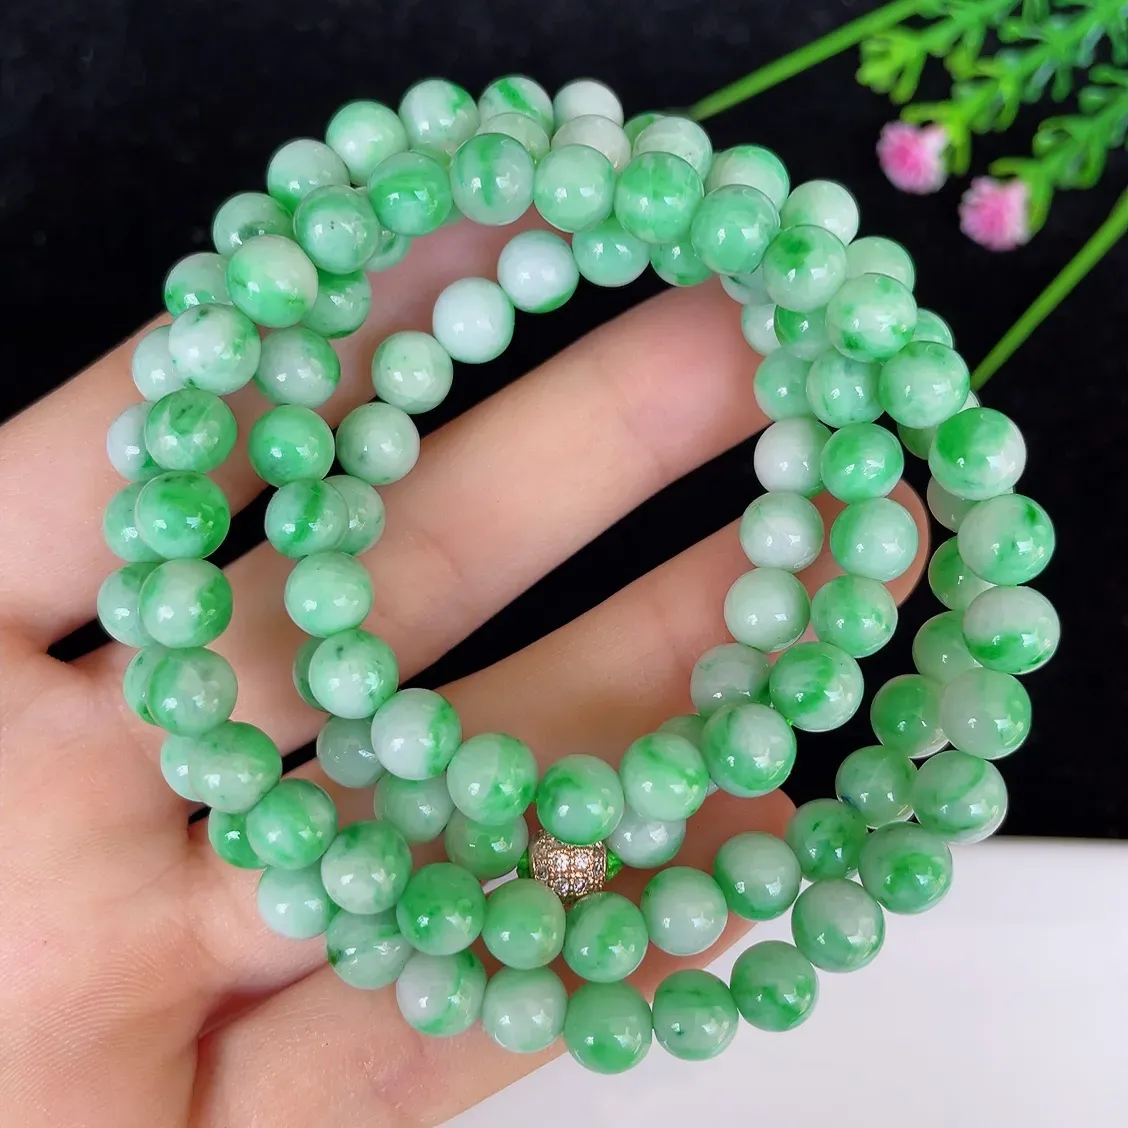 水润飘绿白底青圆珠翡翠项链#110-4664，天然翡翠A货，尺寸取一6.3mm，质地细腻，色泽鲜艳，绿色迷人，佩戴效果佳！！